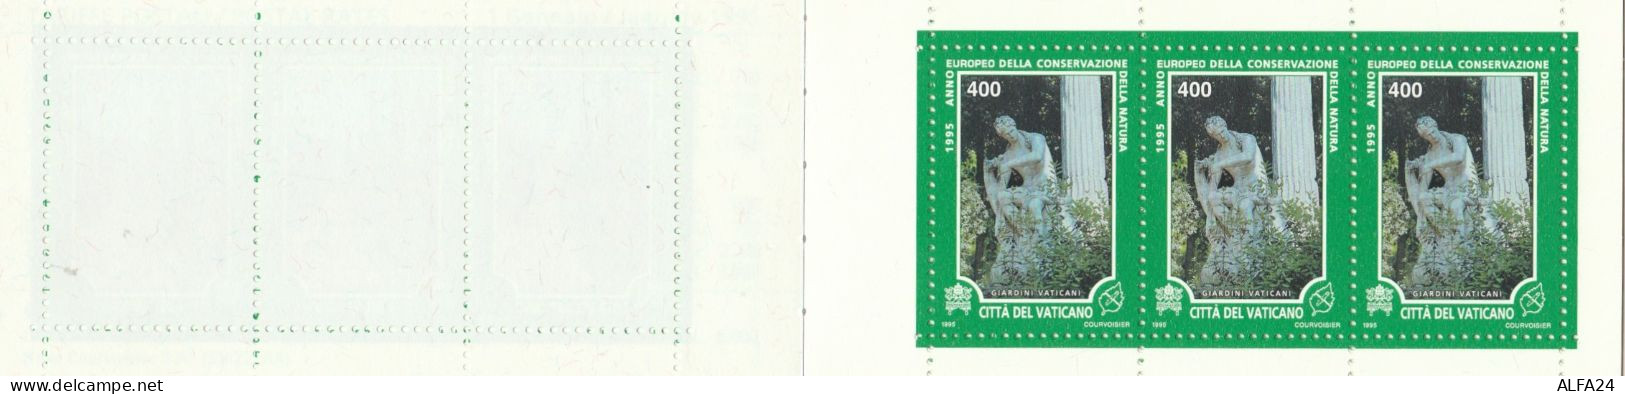 LIBRETTO VATICANO 1995 NUOVO (RY1944 - Carnets